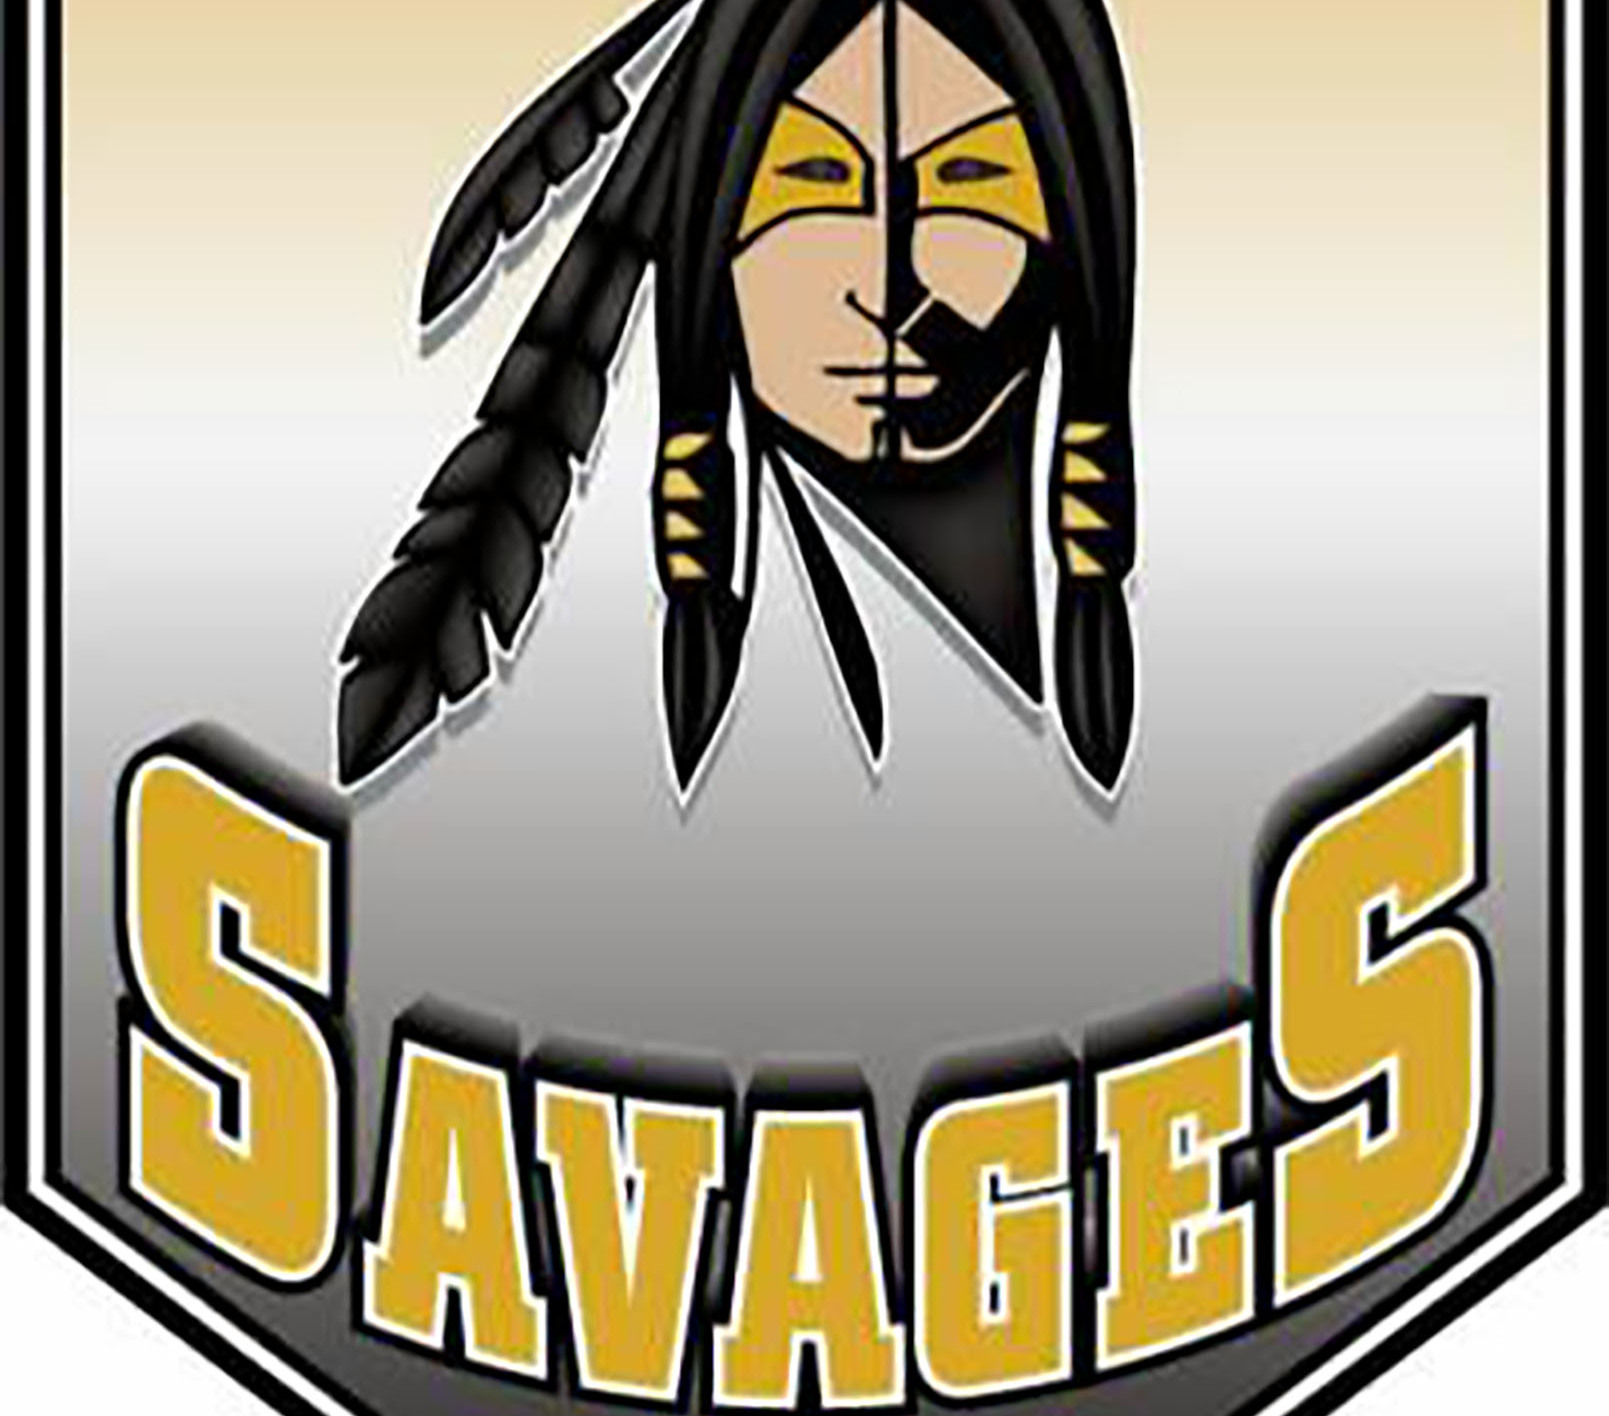 Should Savannah rename its school mascot?